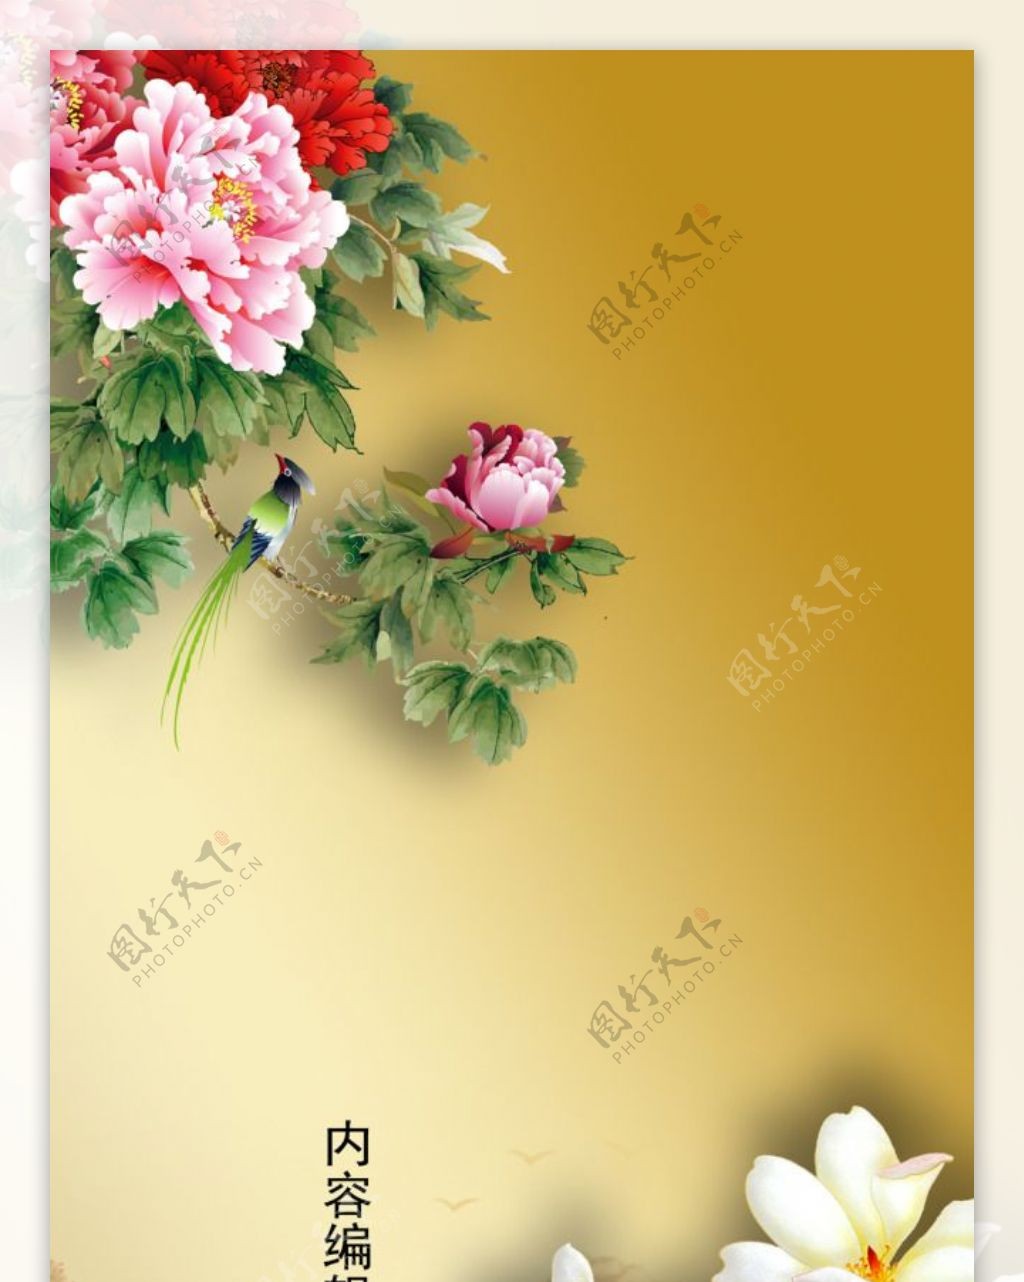 精美简约中国风古典花儿展架设计模板素材